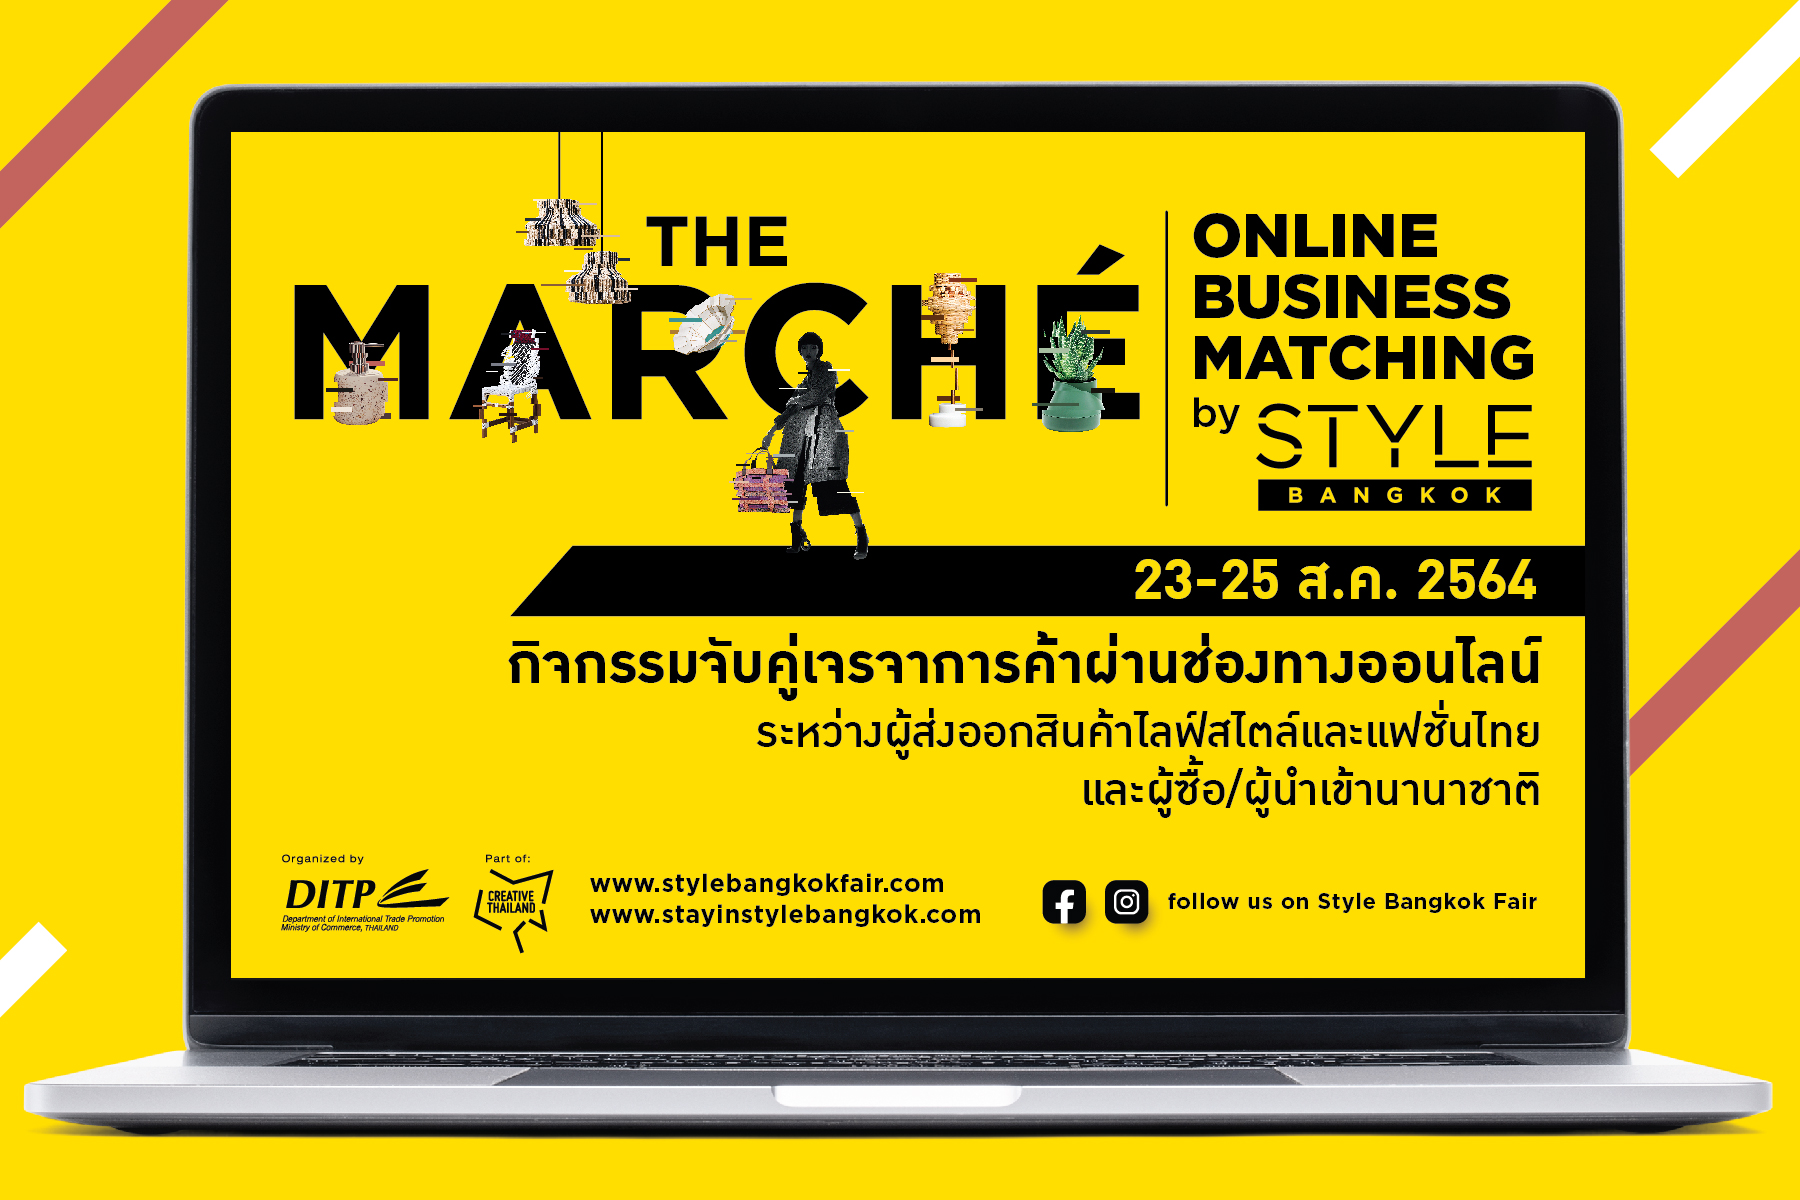 พาณิชย์ เตรียมจัด “The Marché Online Business Matching by STYLE Bangkok”